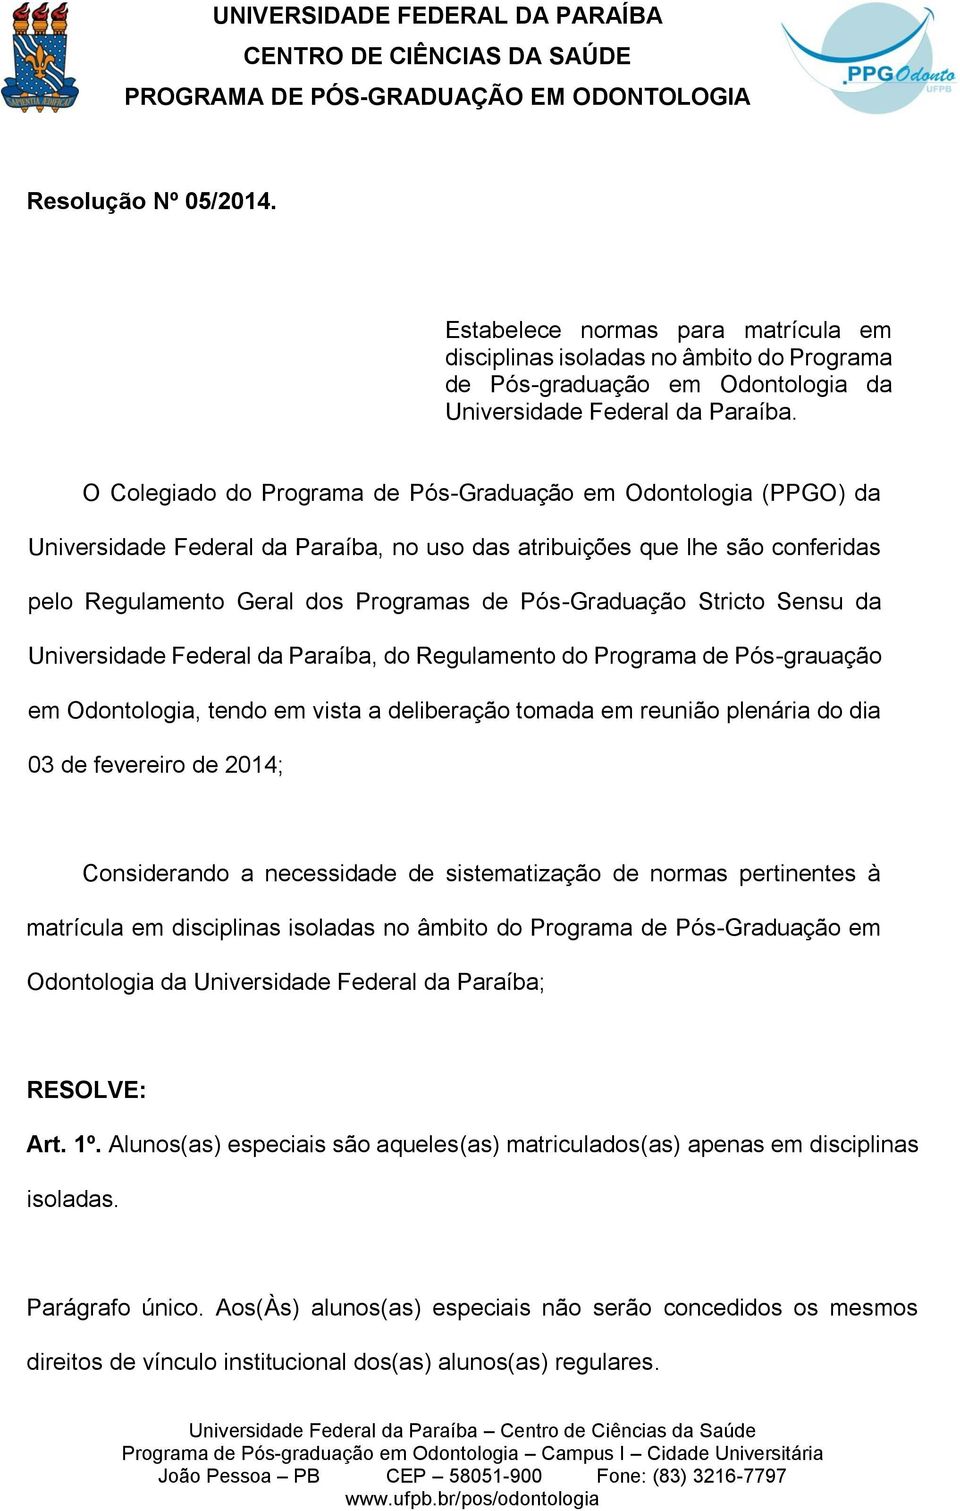 Stricto Sensu da Universidade Federal da Paraíba, do Regulamento do Programa de Pós-grauação em Odontologia, tendo em vista a deliberação tomada em reunião plenária do dia 03 de fevereiro de 2014;